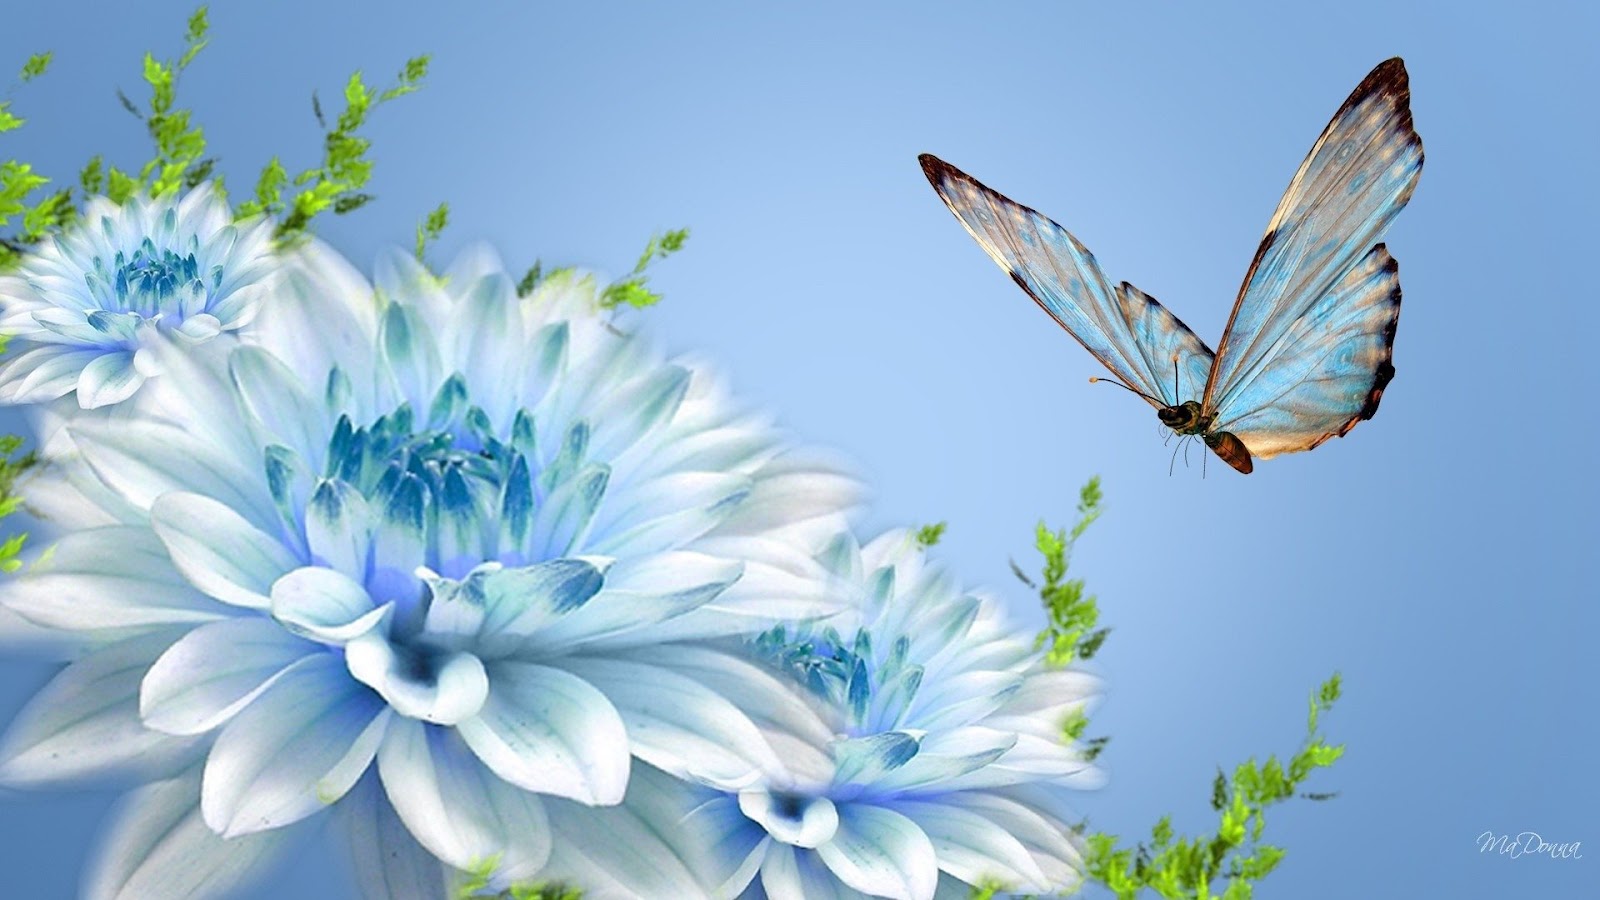 Flowers and Butterflies Wallpaper